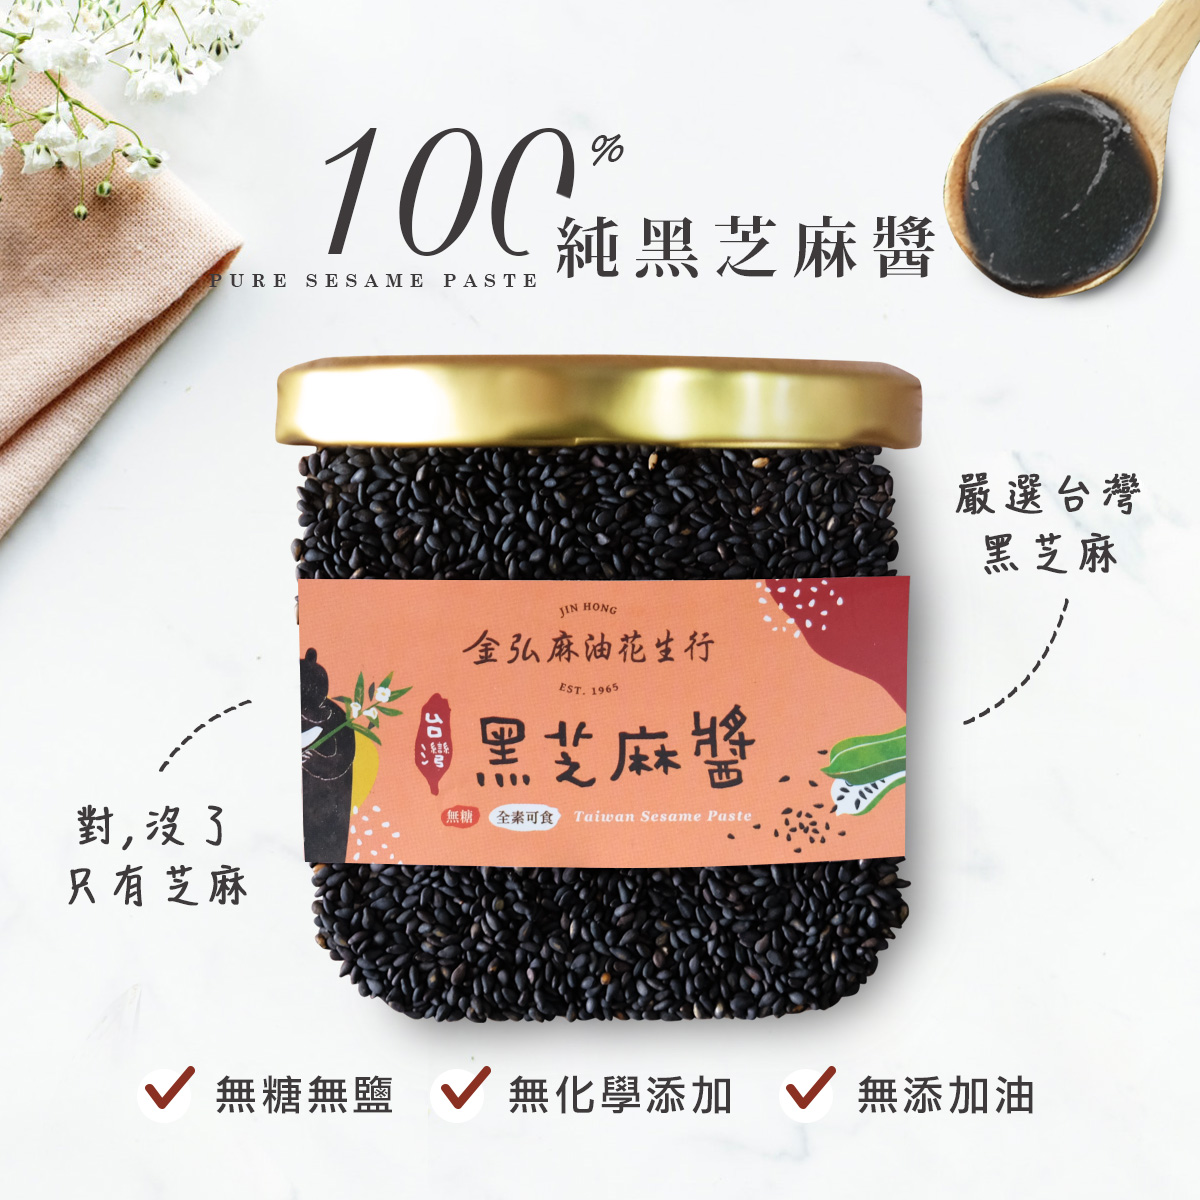 100%台灣黑芝麻醬，無糖、無鹽、無添加物，給你最新鮮純粹的美味。